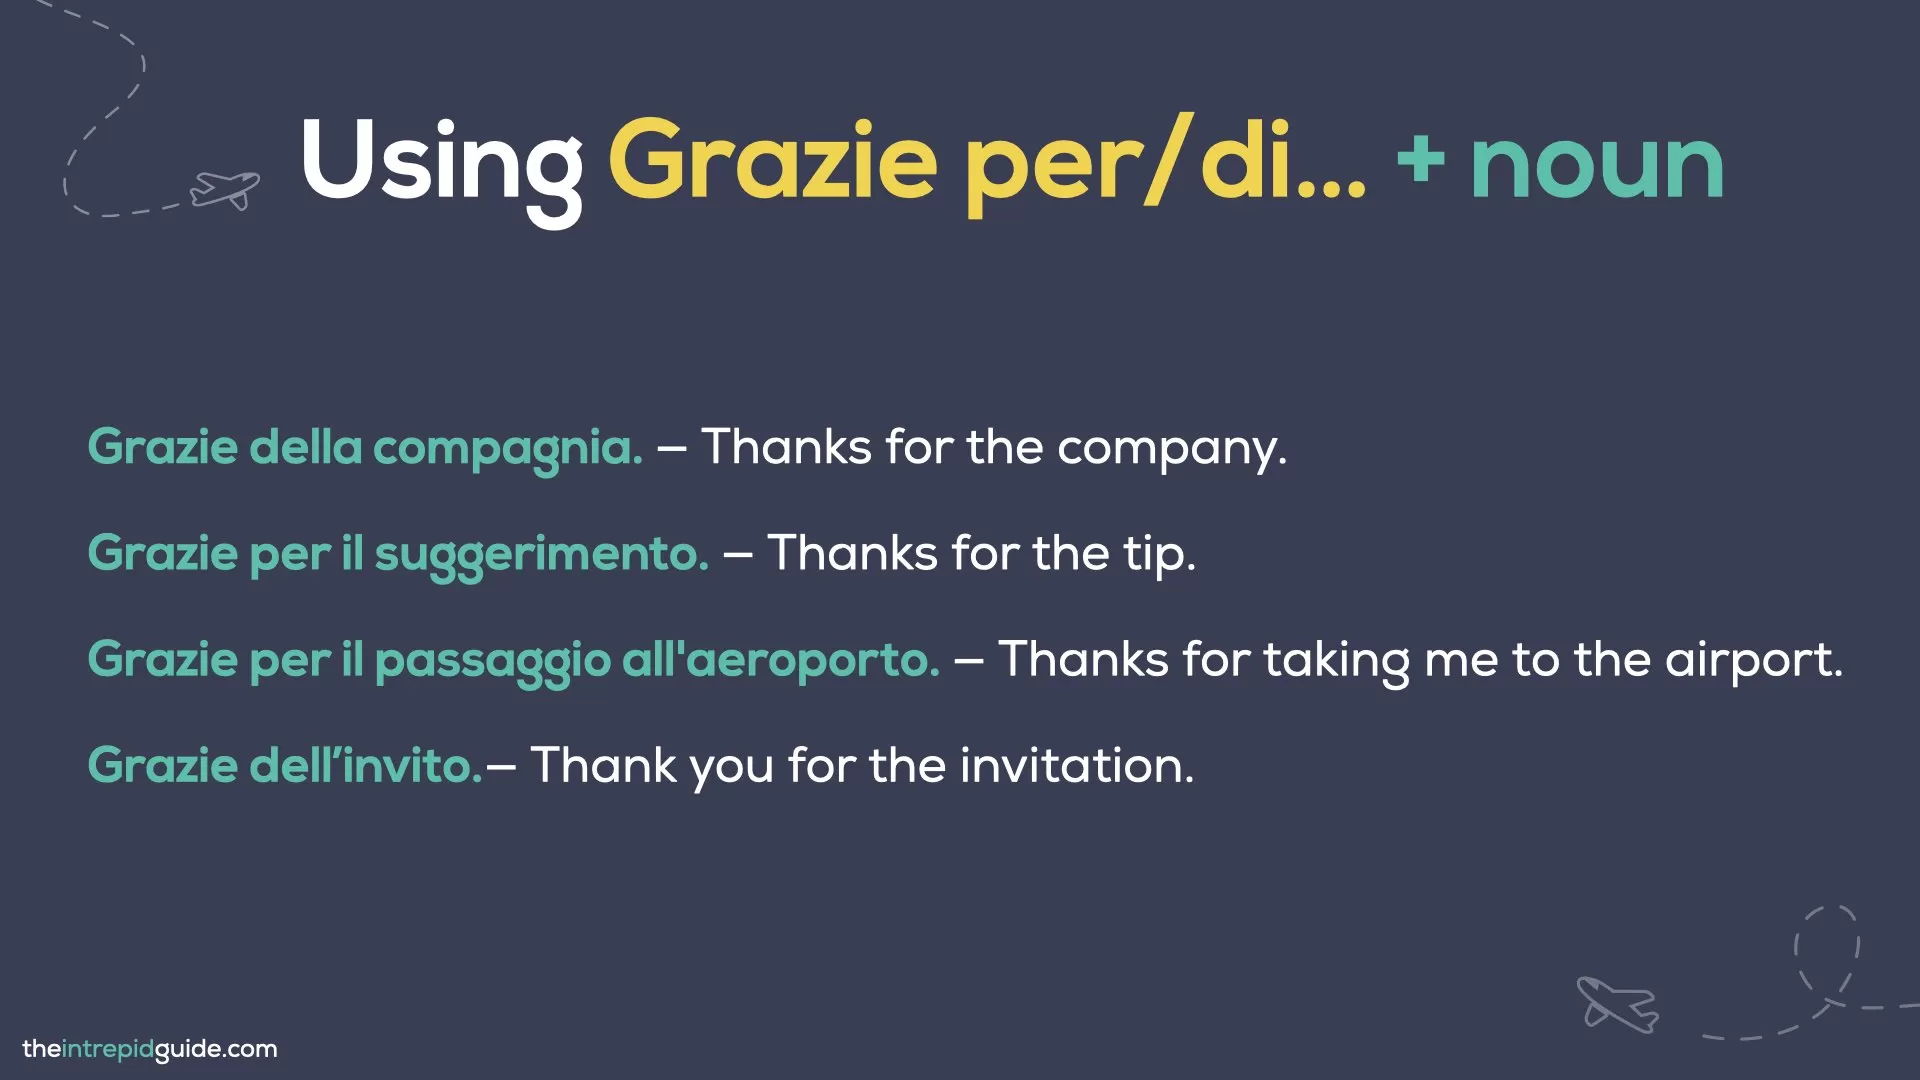 How to say thank you in Italian - Grazie delle compagnia, grazie dell'invito